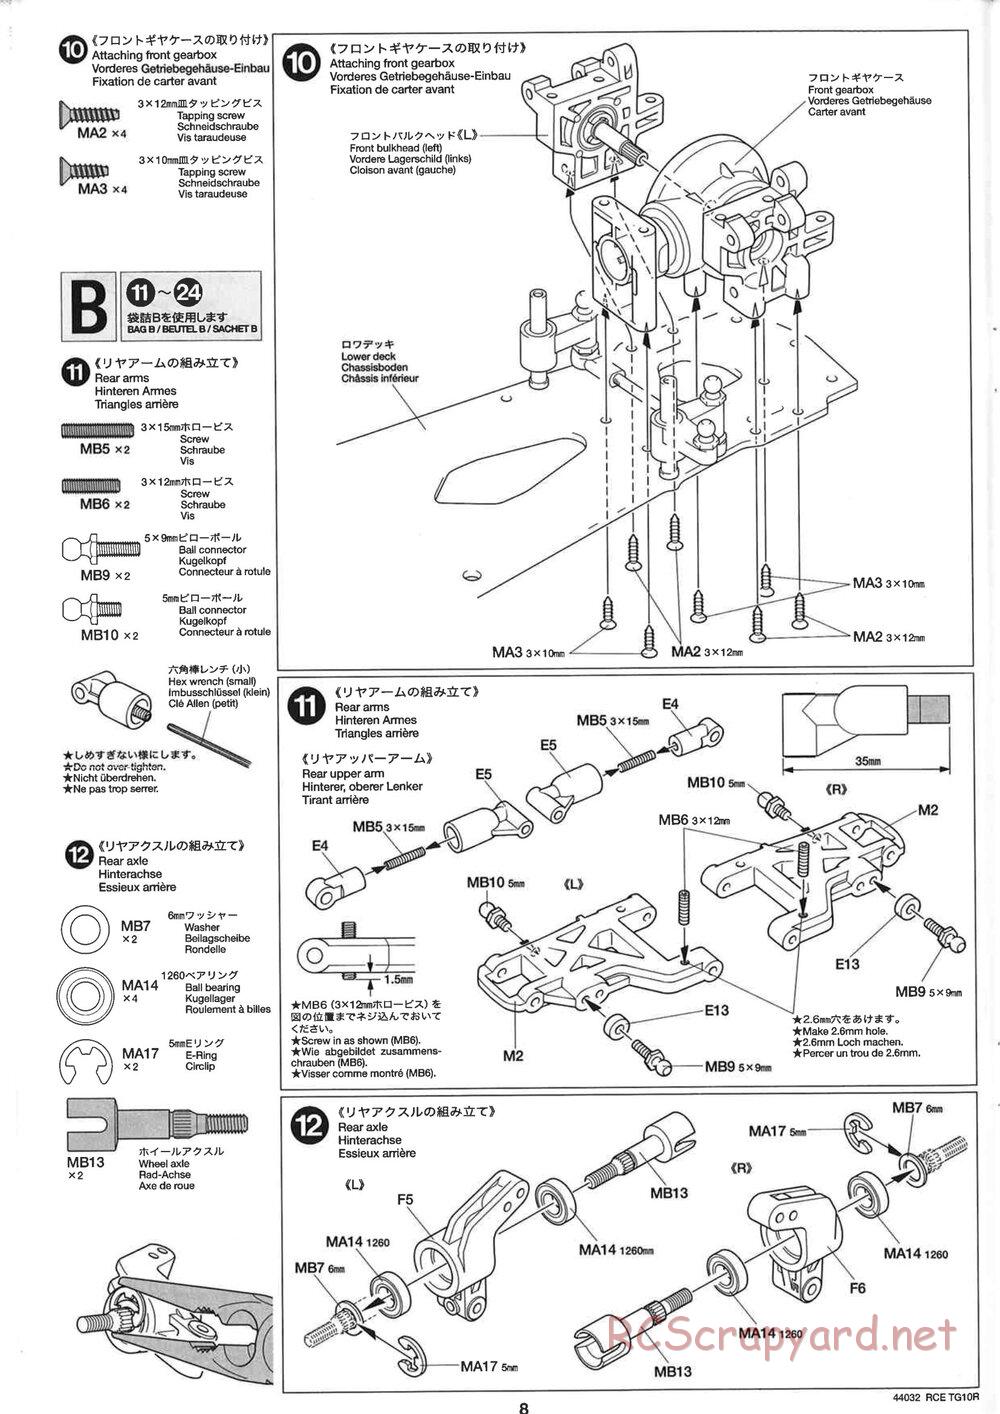 Tamiya - TG10R Chassis - Manual - Page 8